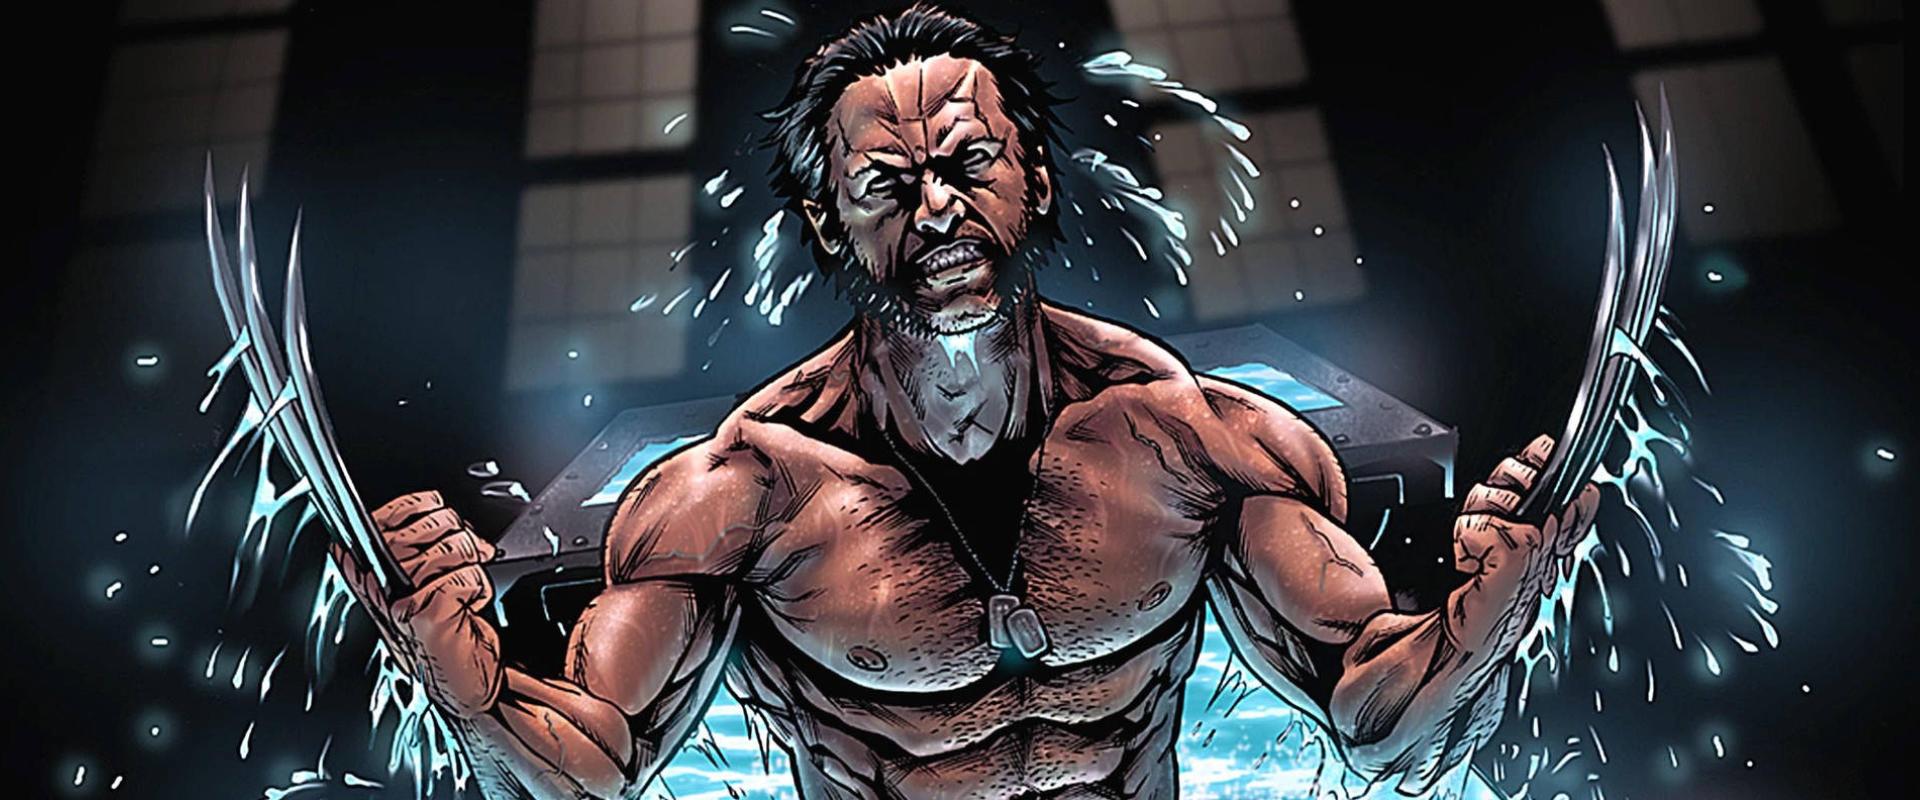 Mindenki megnyugodhat, a szivárgás ellenére is sínen van a Wolverine-játék